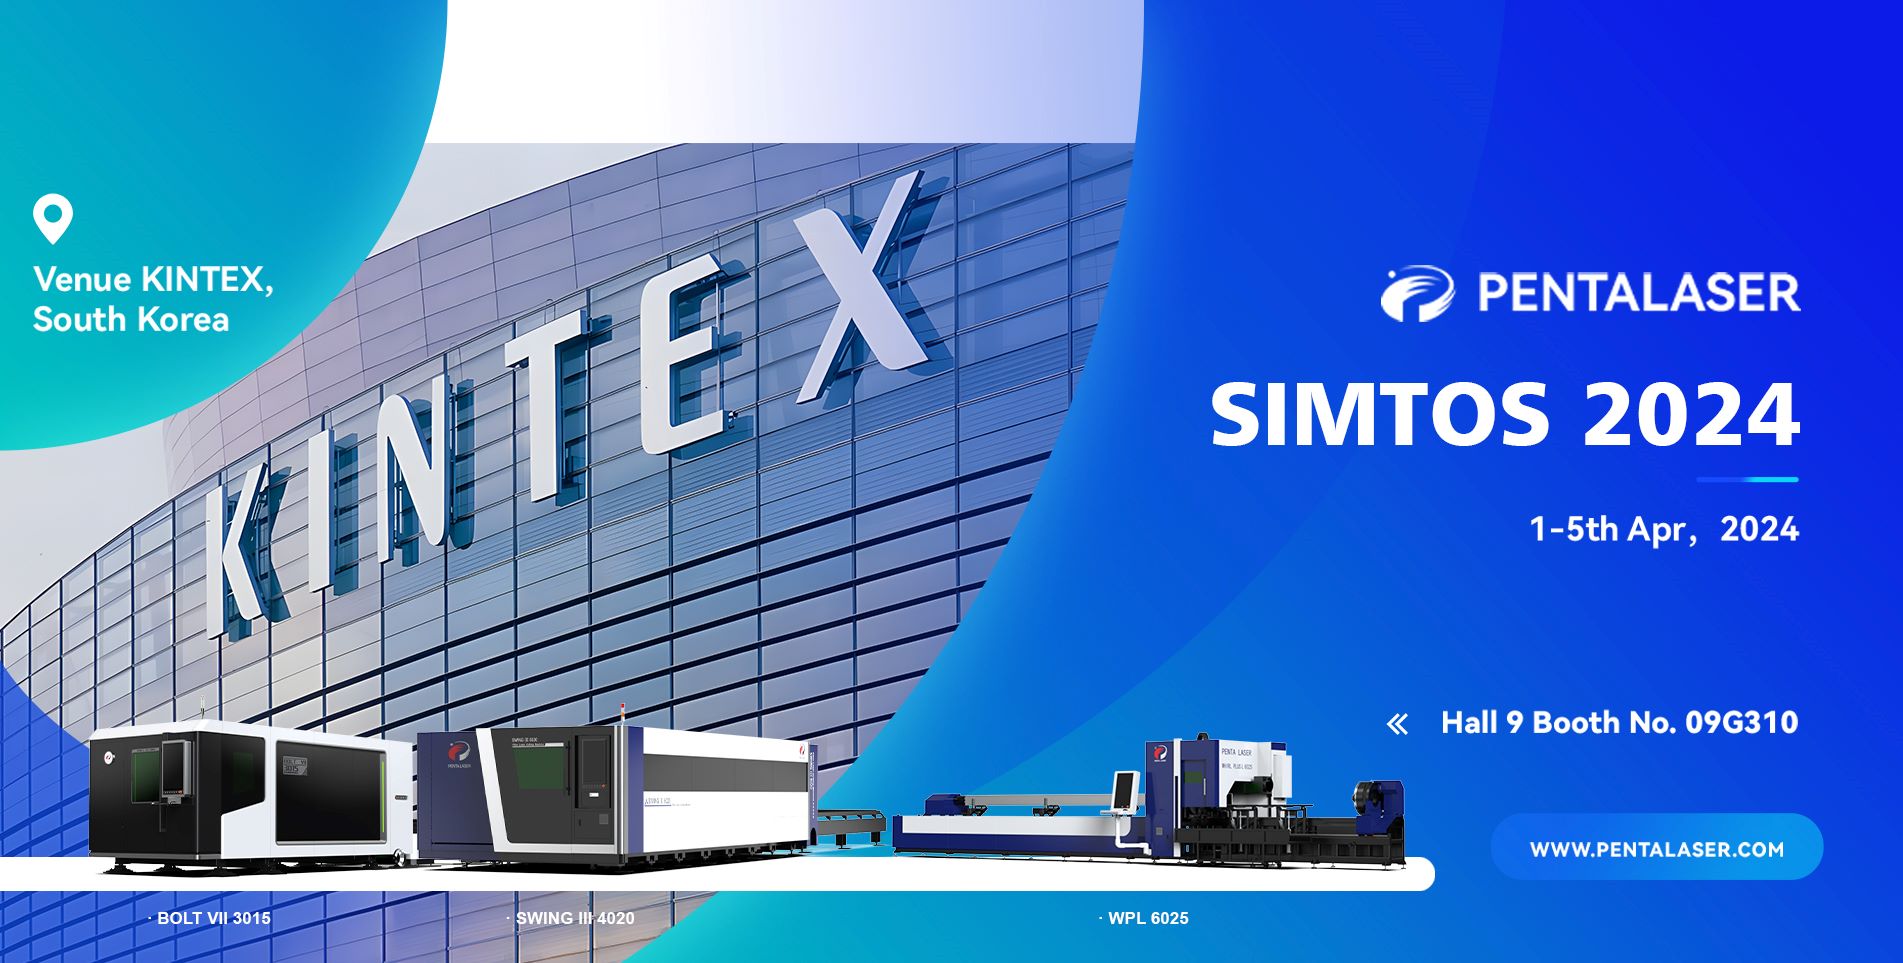 ظهرت Penta Laser لأول مرة في معرض SIMOTS 2024 Korea للتصنيع ، مما يدل على اختراقات جديدة في تكنولوجيا القطع بالليزر